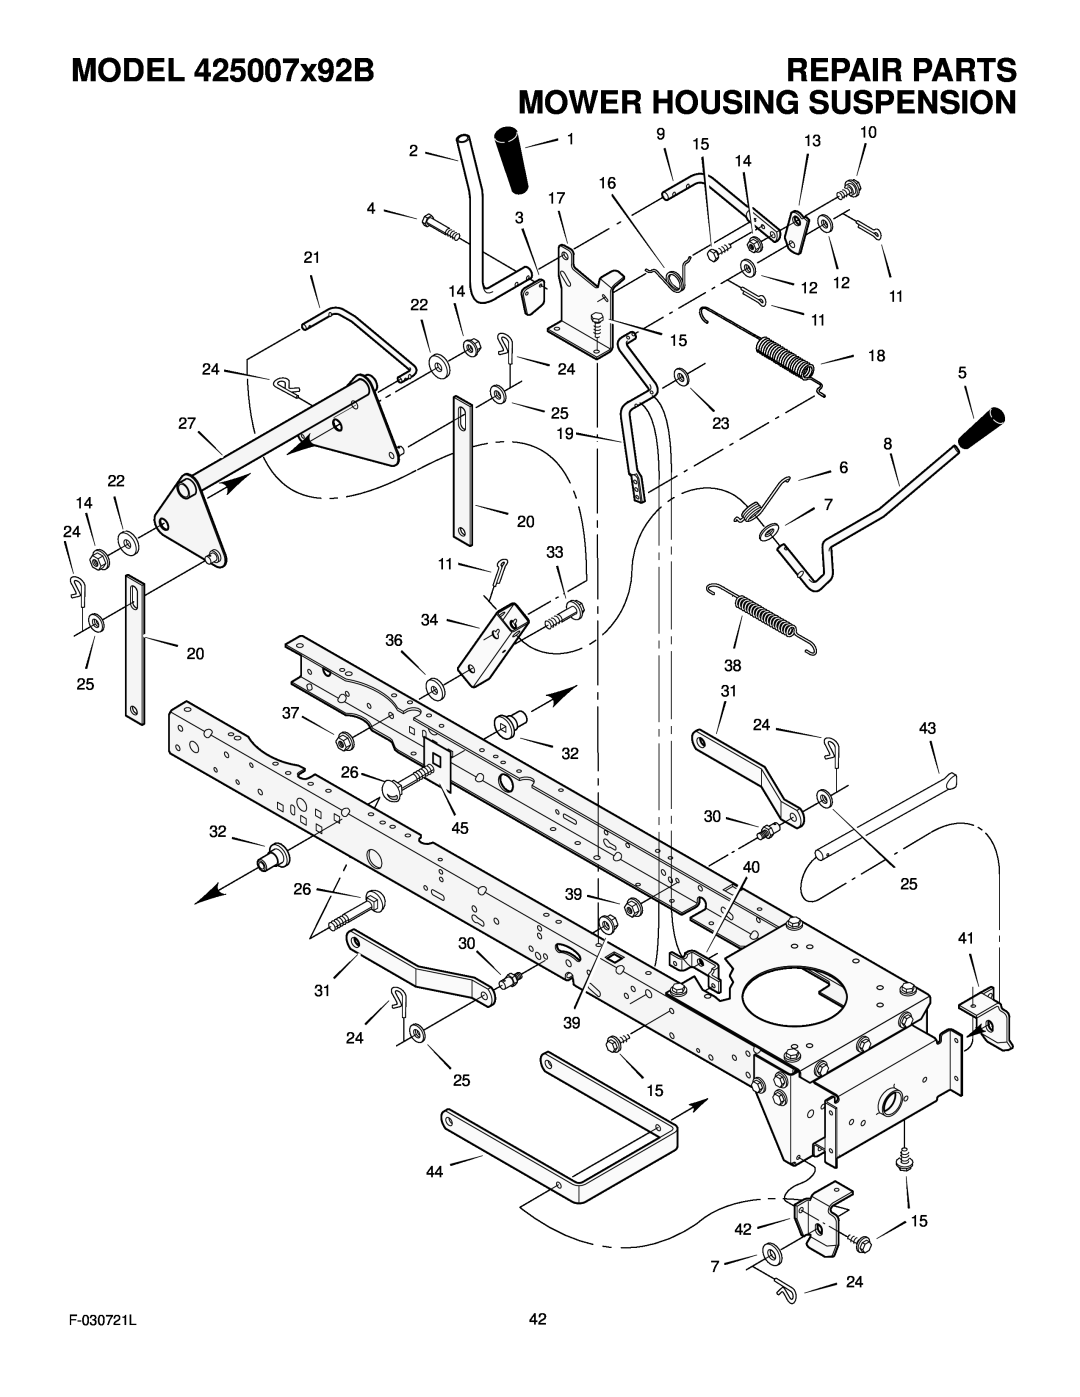 Murray manual Repair Parts Mower Housing Suspension, MODEL 425007x92B, F-030721L 